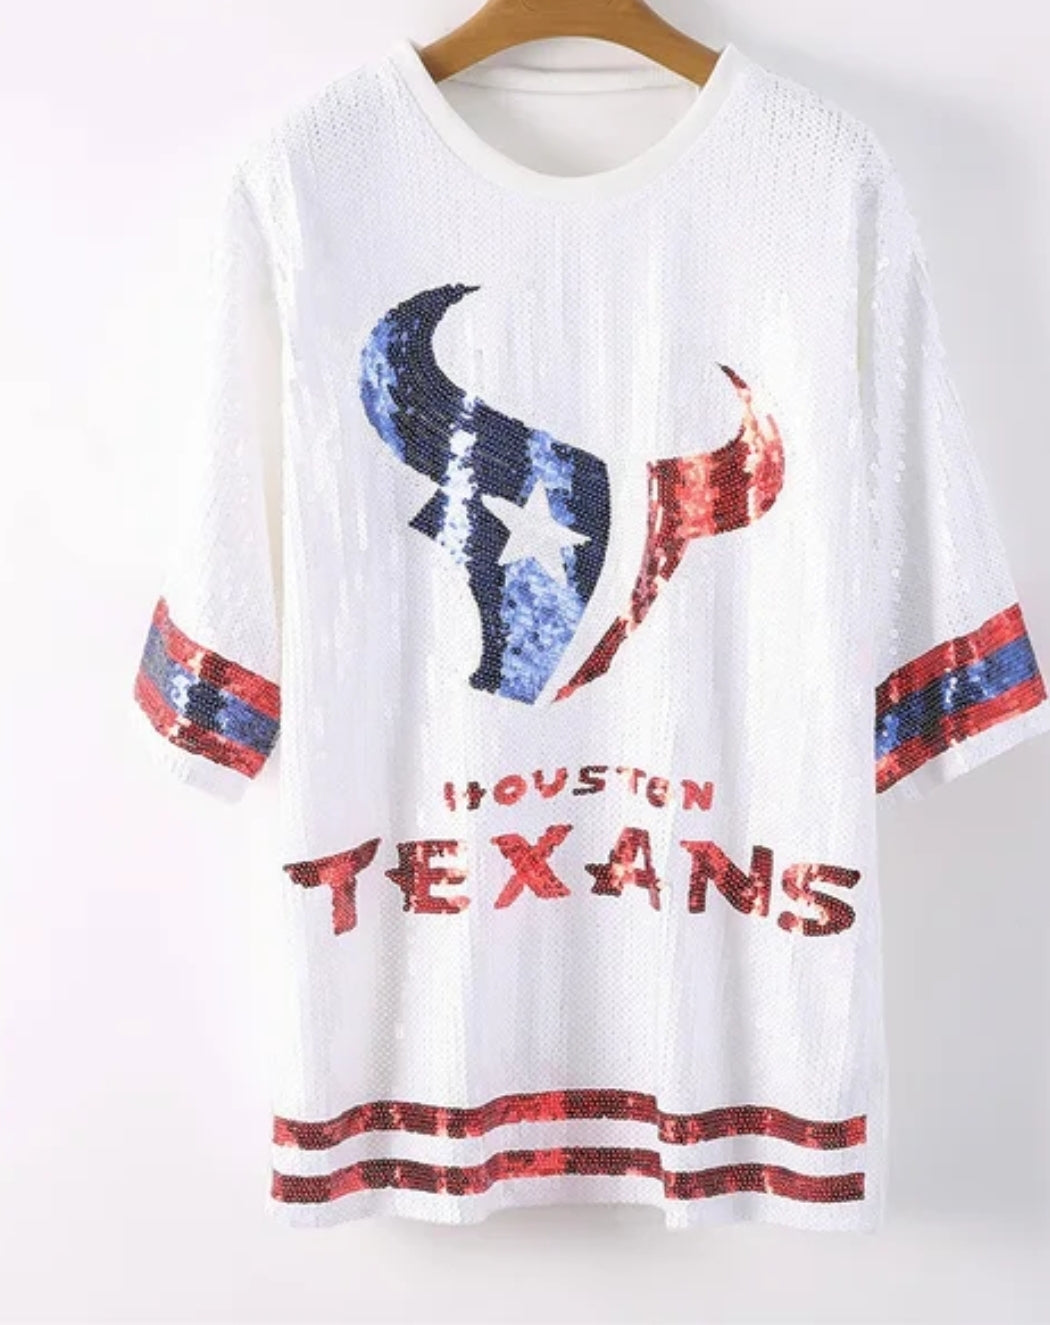 Texans Sequence shirt dress